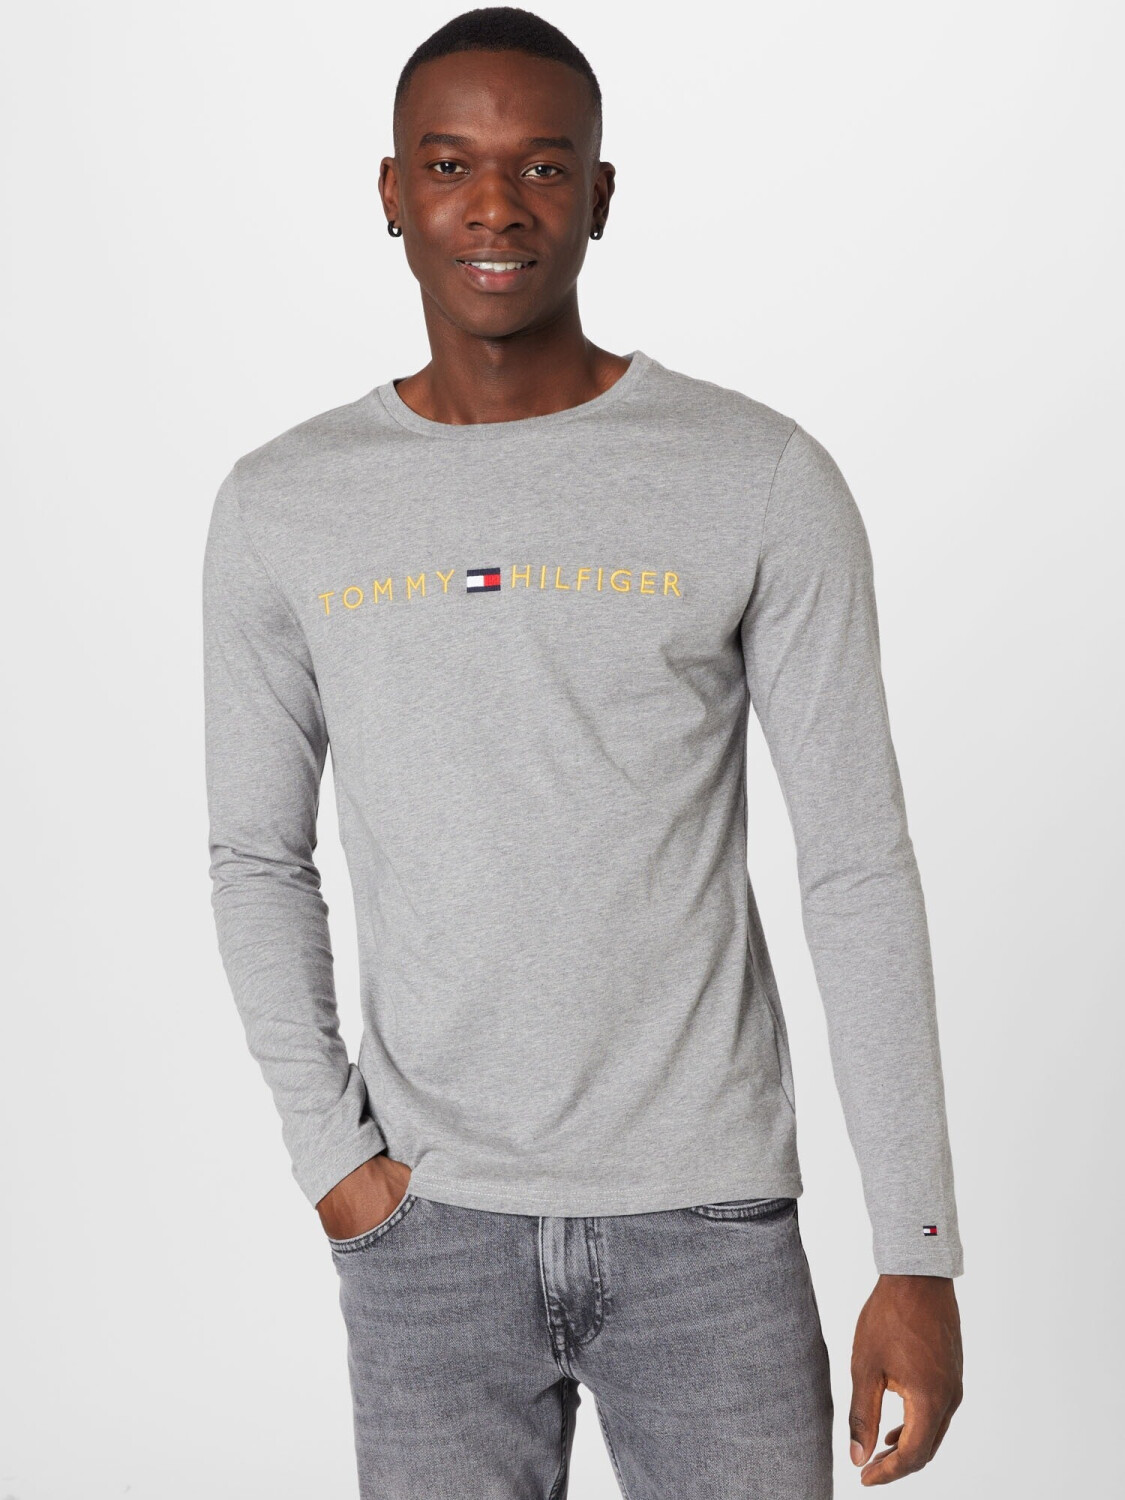 Tommy Hilfiger Underwear Long Sleeve T-Shirt grey (UM0UM01640) ab 25,95 € |  Preisvergleich bei